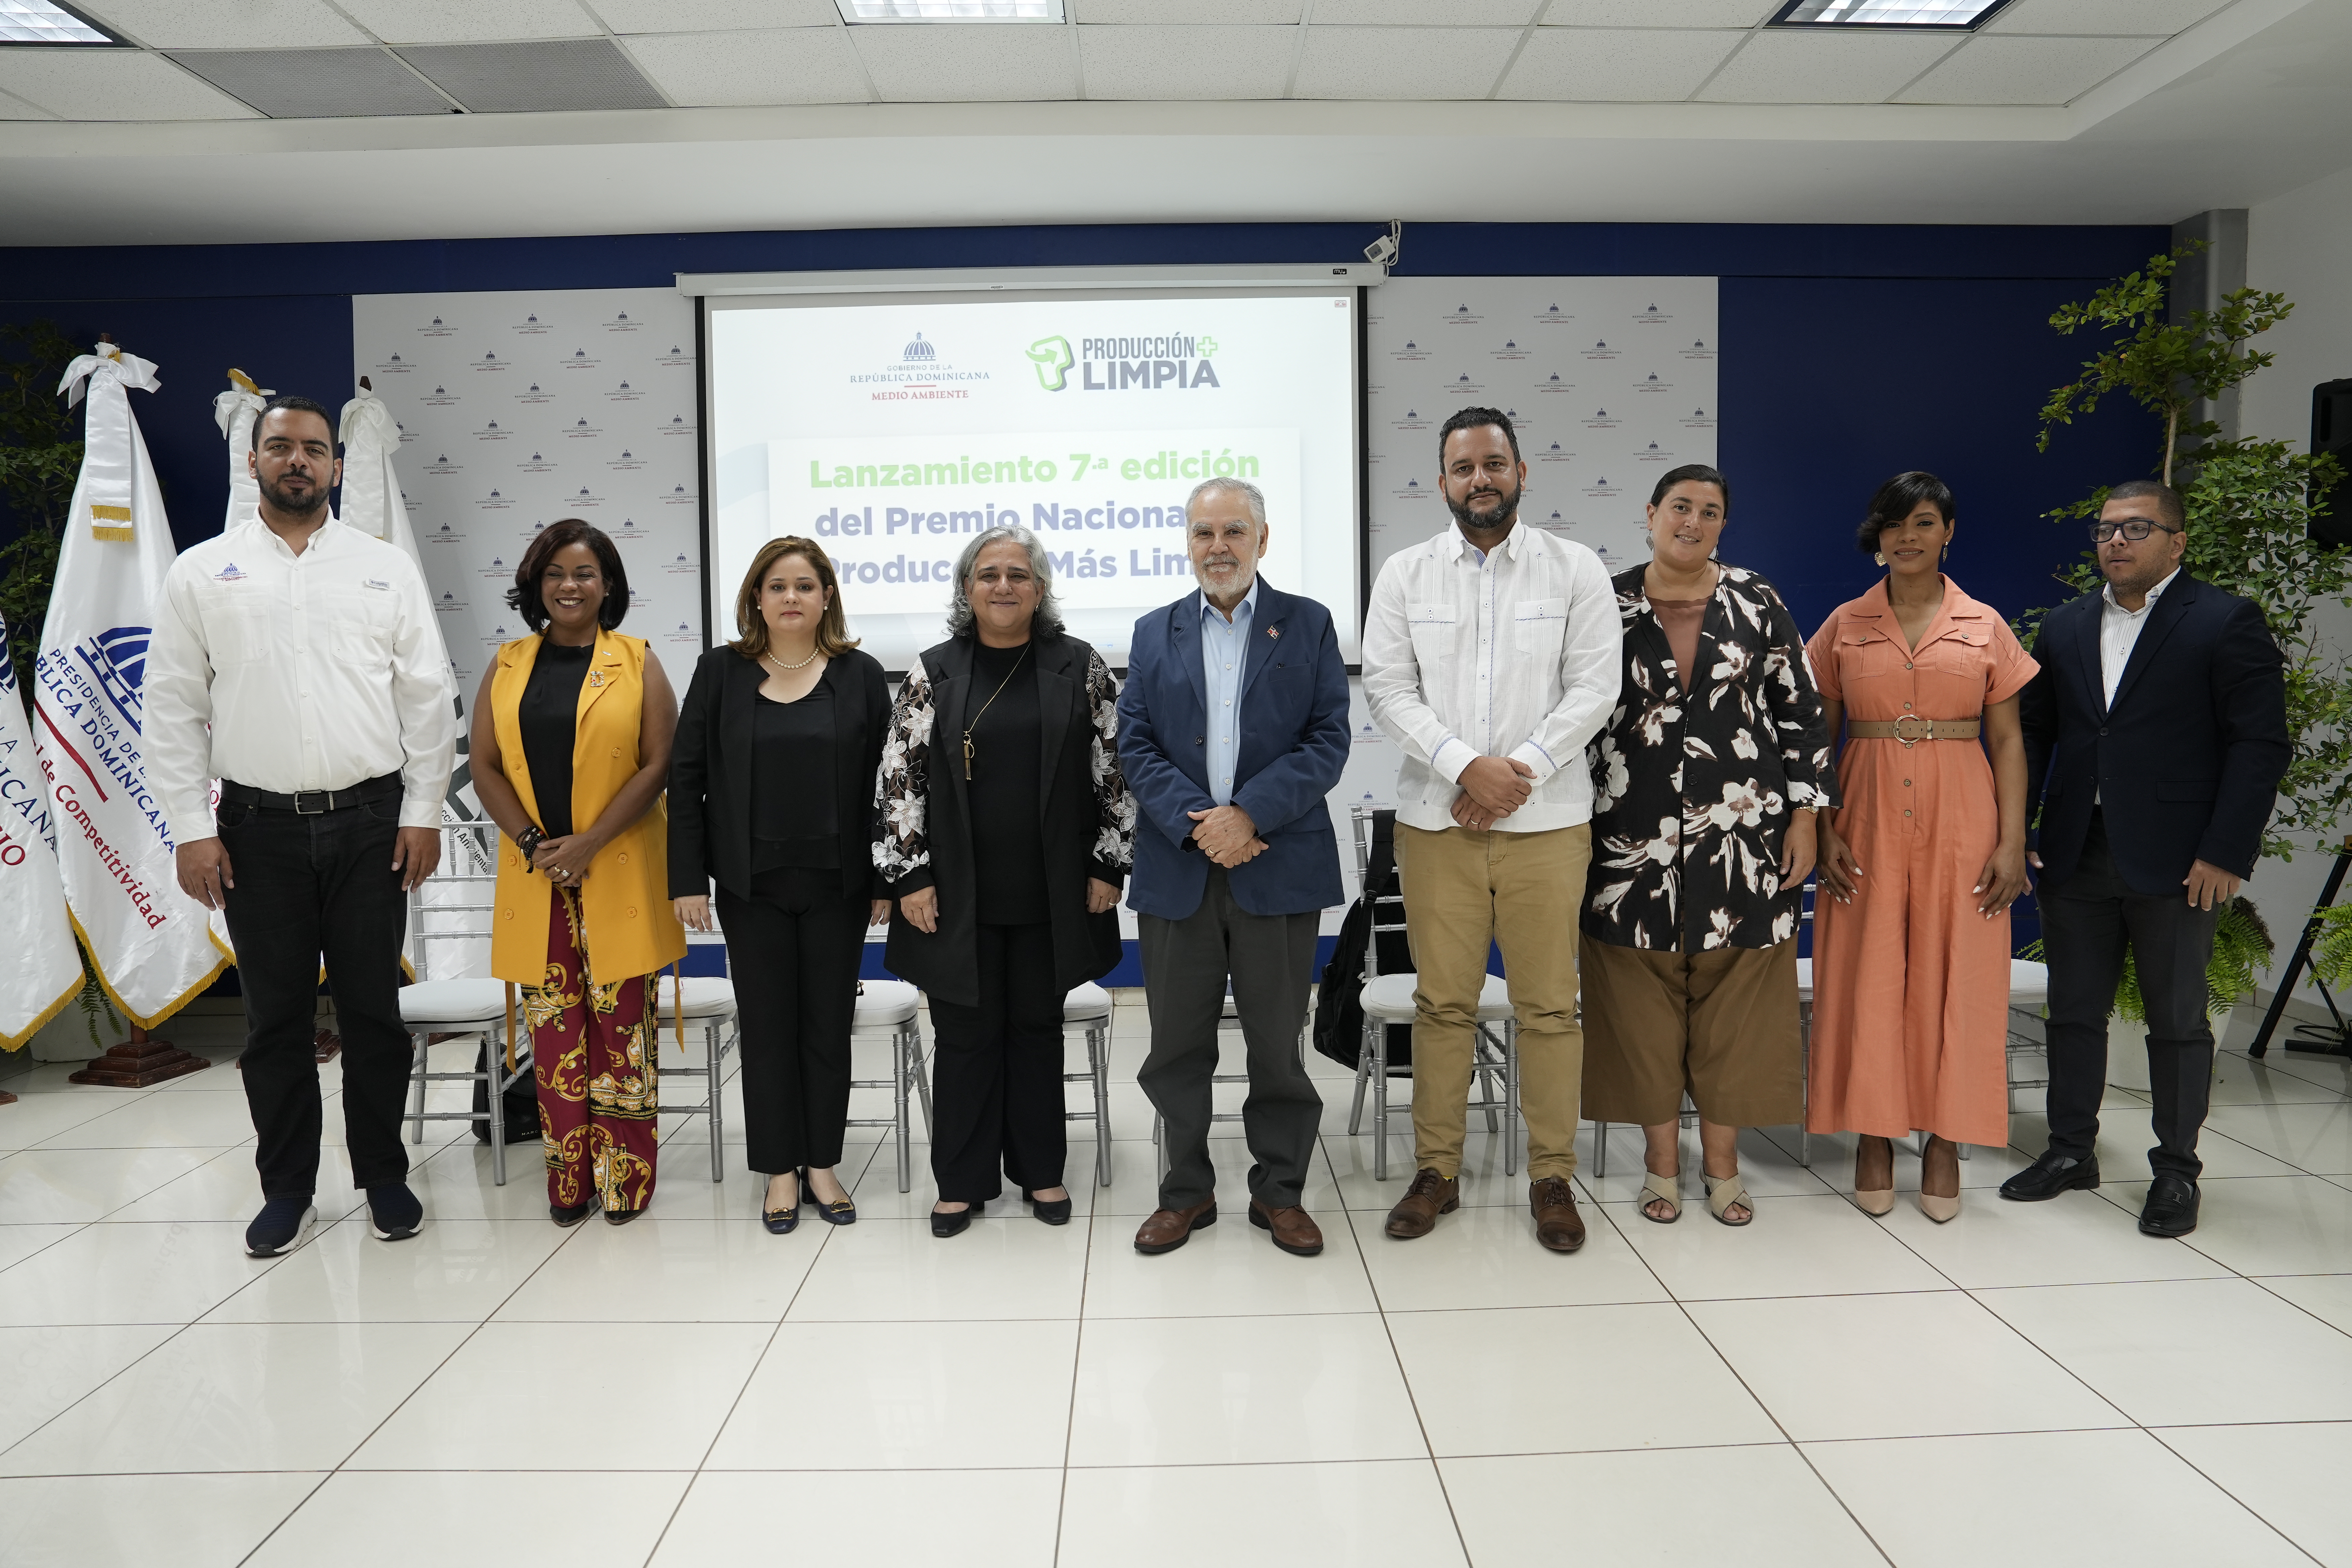 REPÚBLICA DOMINICANA: Unas 20 empresas se han interesado en participar en el Premio Nacional de Producción Más Limpia del Ministerio de Medio Ambiente